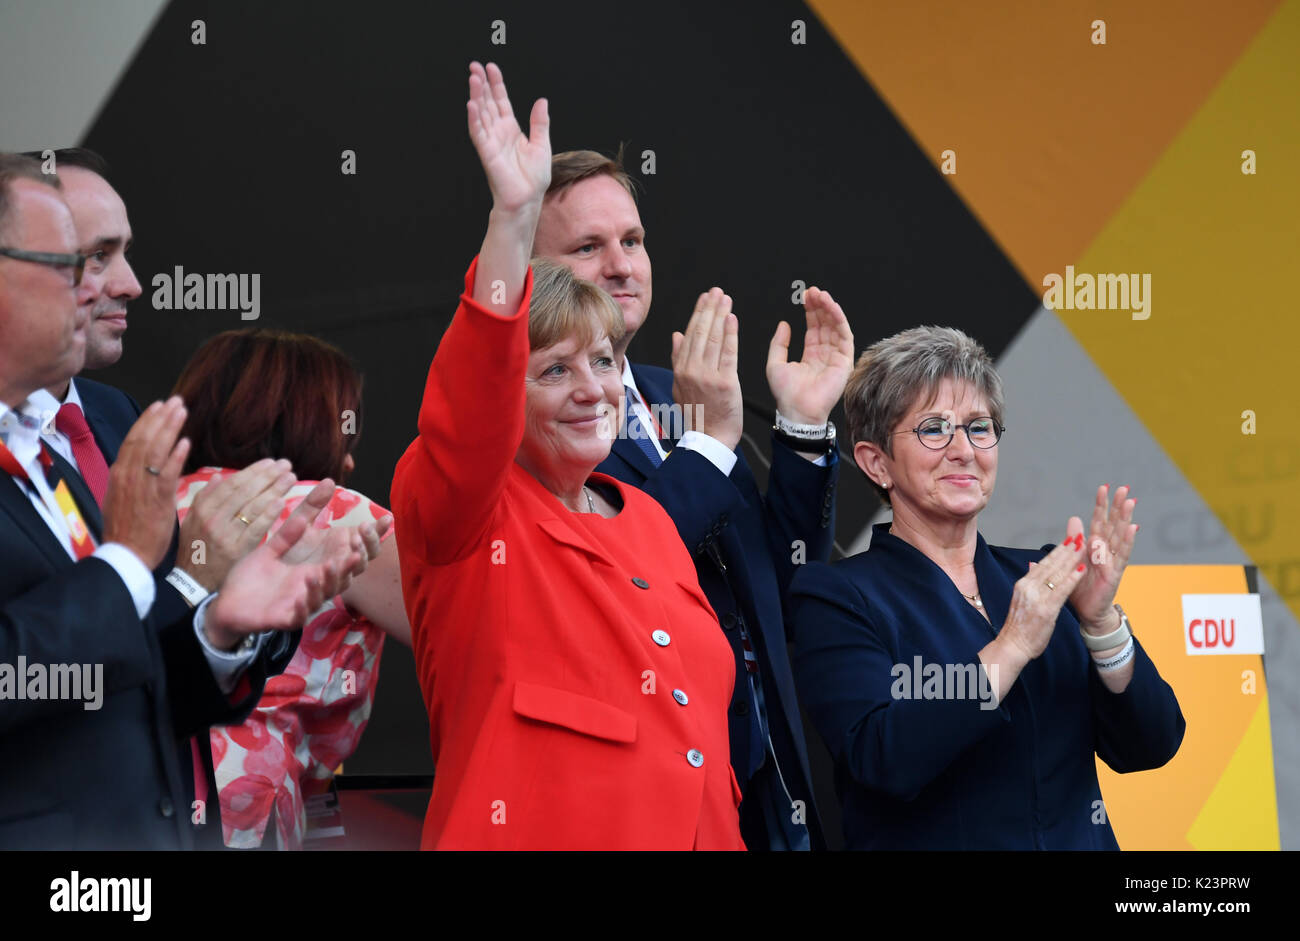 Fidenza, Italia. Il 29 agosto, 2017. Il cancelliere tedesco Angela Merkel (M) ringrazia i suoi sostenitori a una campagna elettorale evento della CDU nel Land di Brandeburgo/Havel, Germania, 29 agosto 2017. Il tedesco si terranno le elezioni generali del 24 settembre 2017. Credito: dpa picture alliance/Alamy Live News Foto Stock